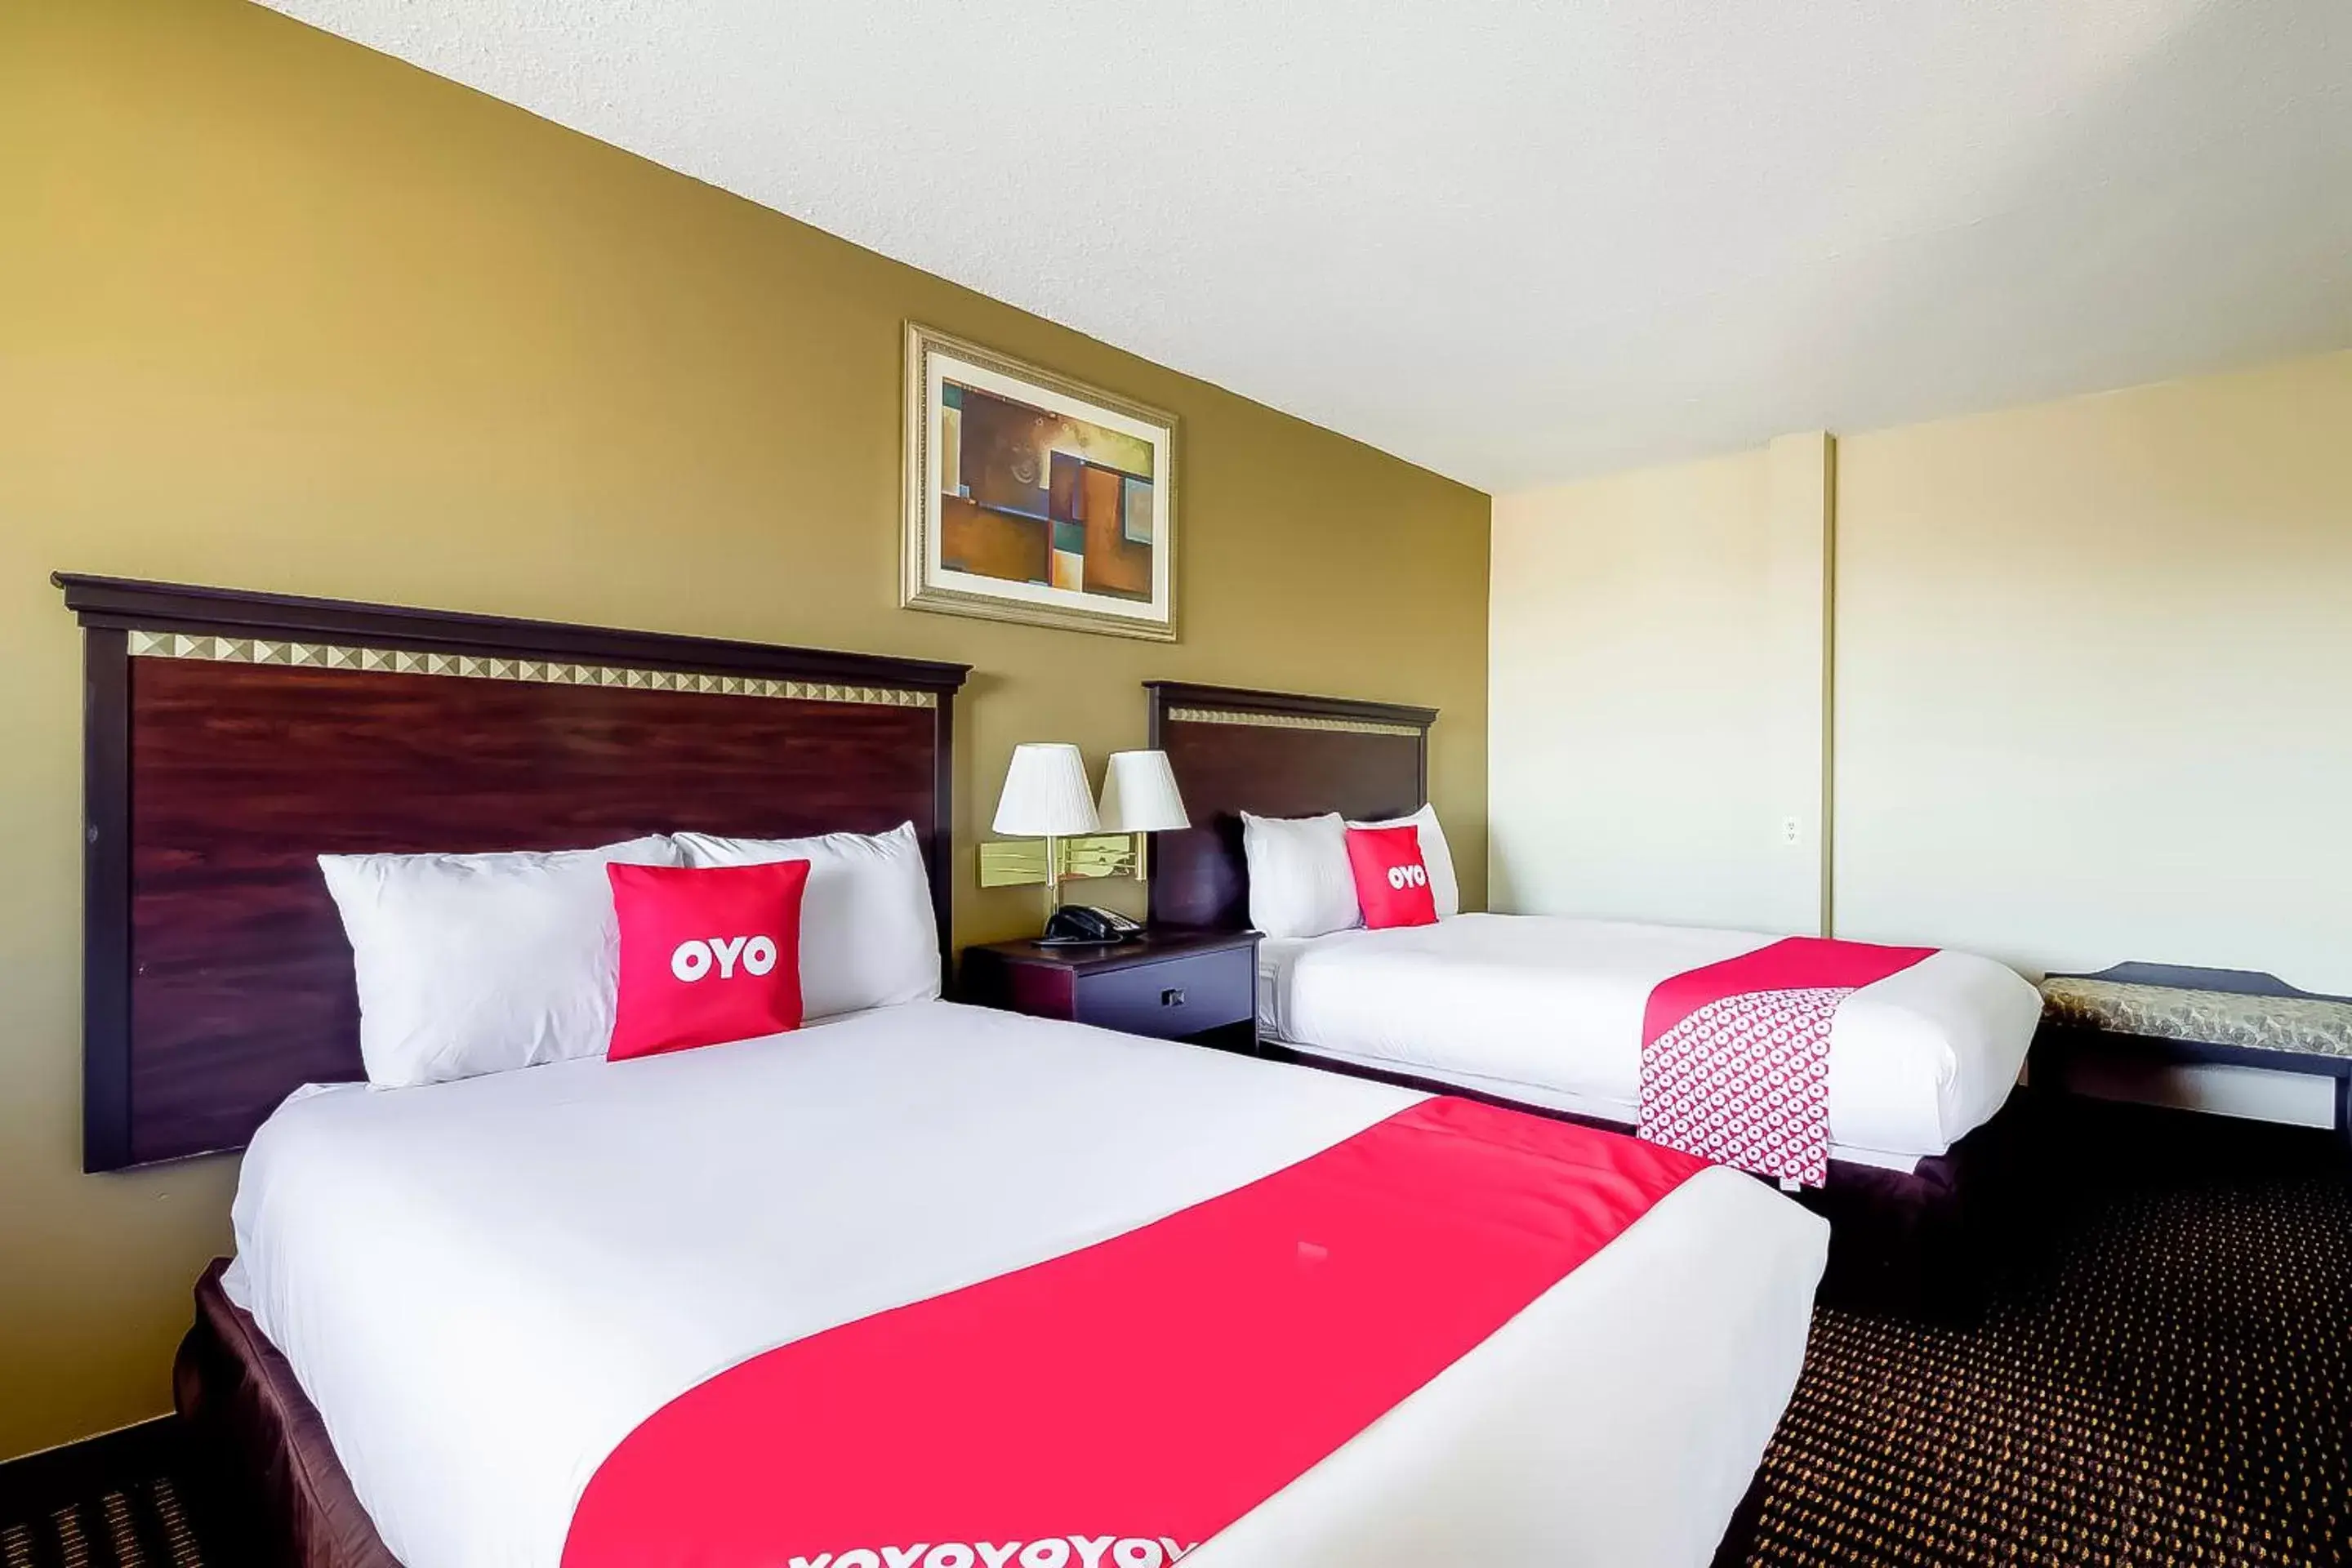 Bedroom, Bed in OYO Hotel Eloy Casa Grande near I-10